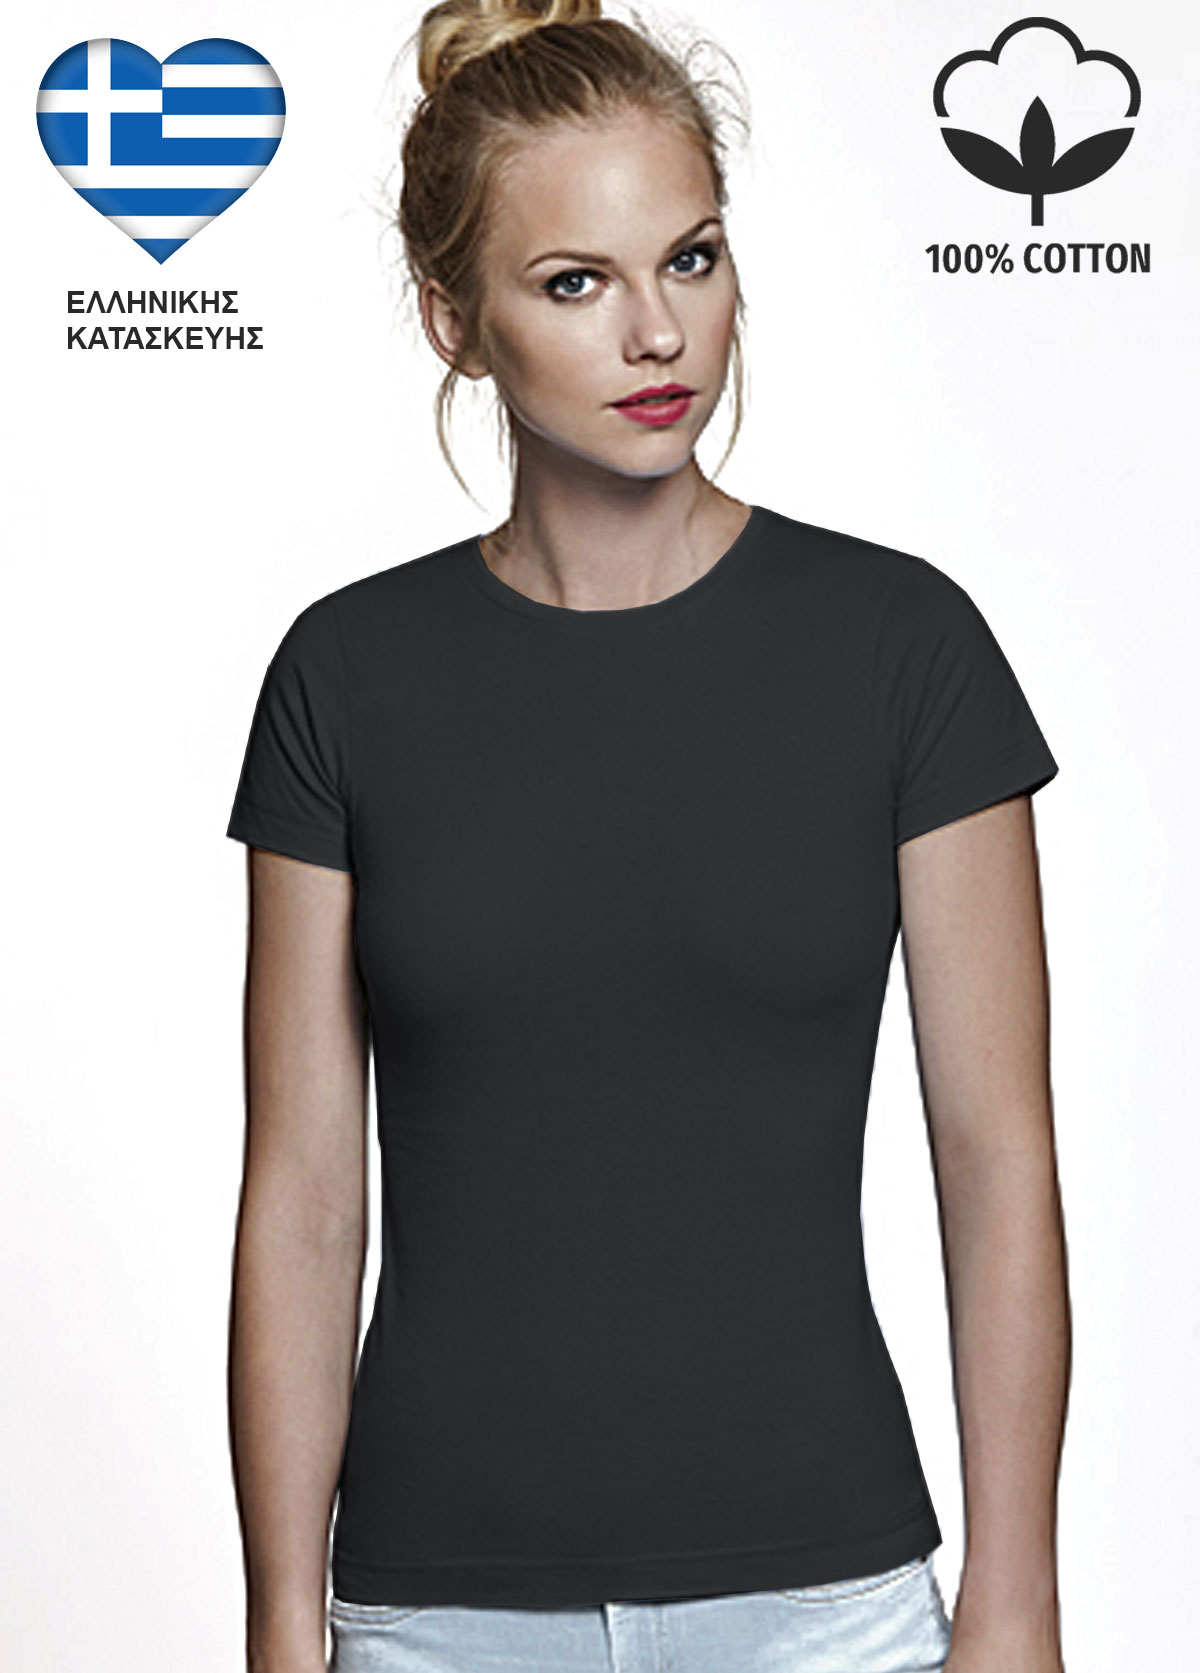 Γκρι Γυναικείο Βαμβακερό T-Shirt Ελληνικής Κατασκευής 6627